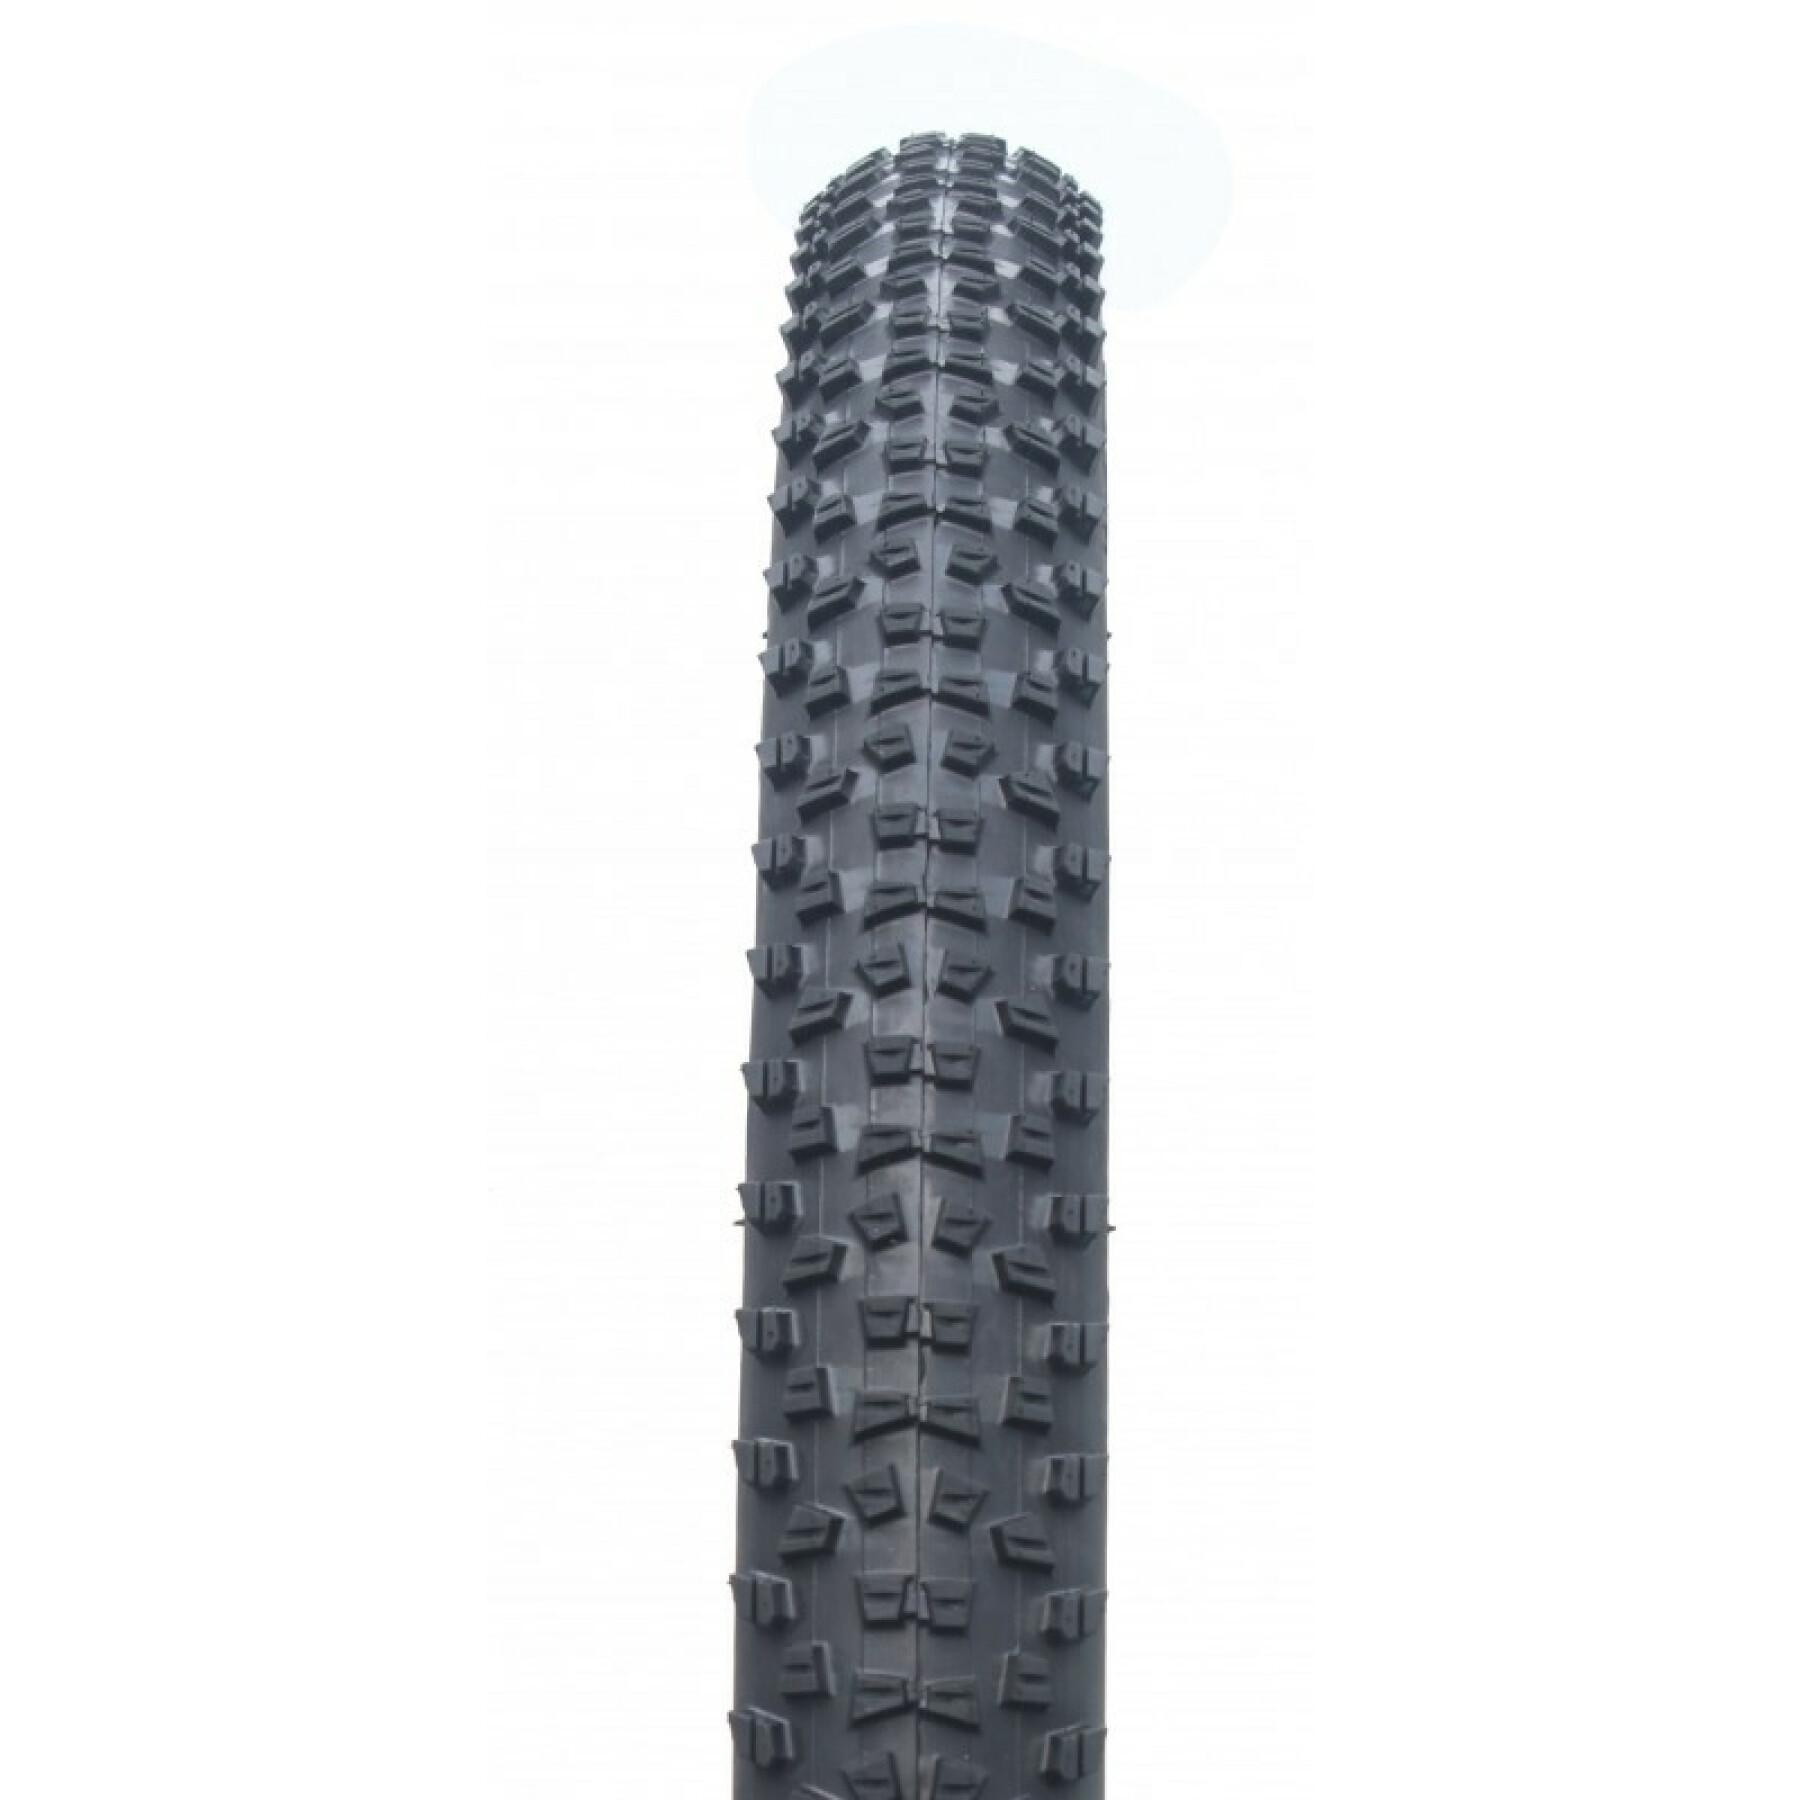 MTB-Reifen 27.5x2.10 mit weichen Wulstkernen Bike Original